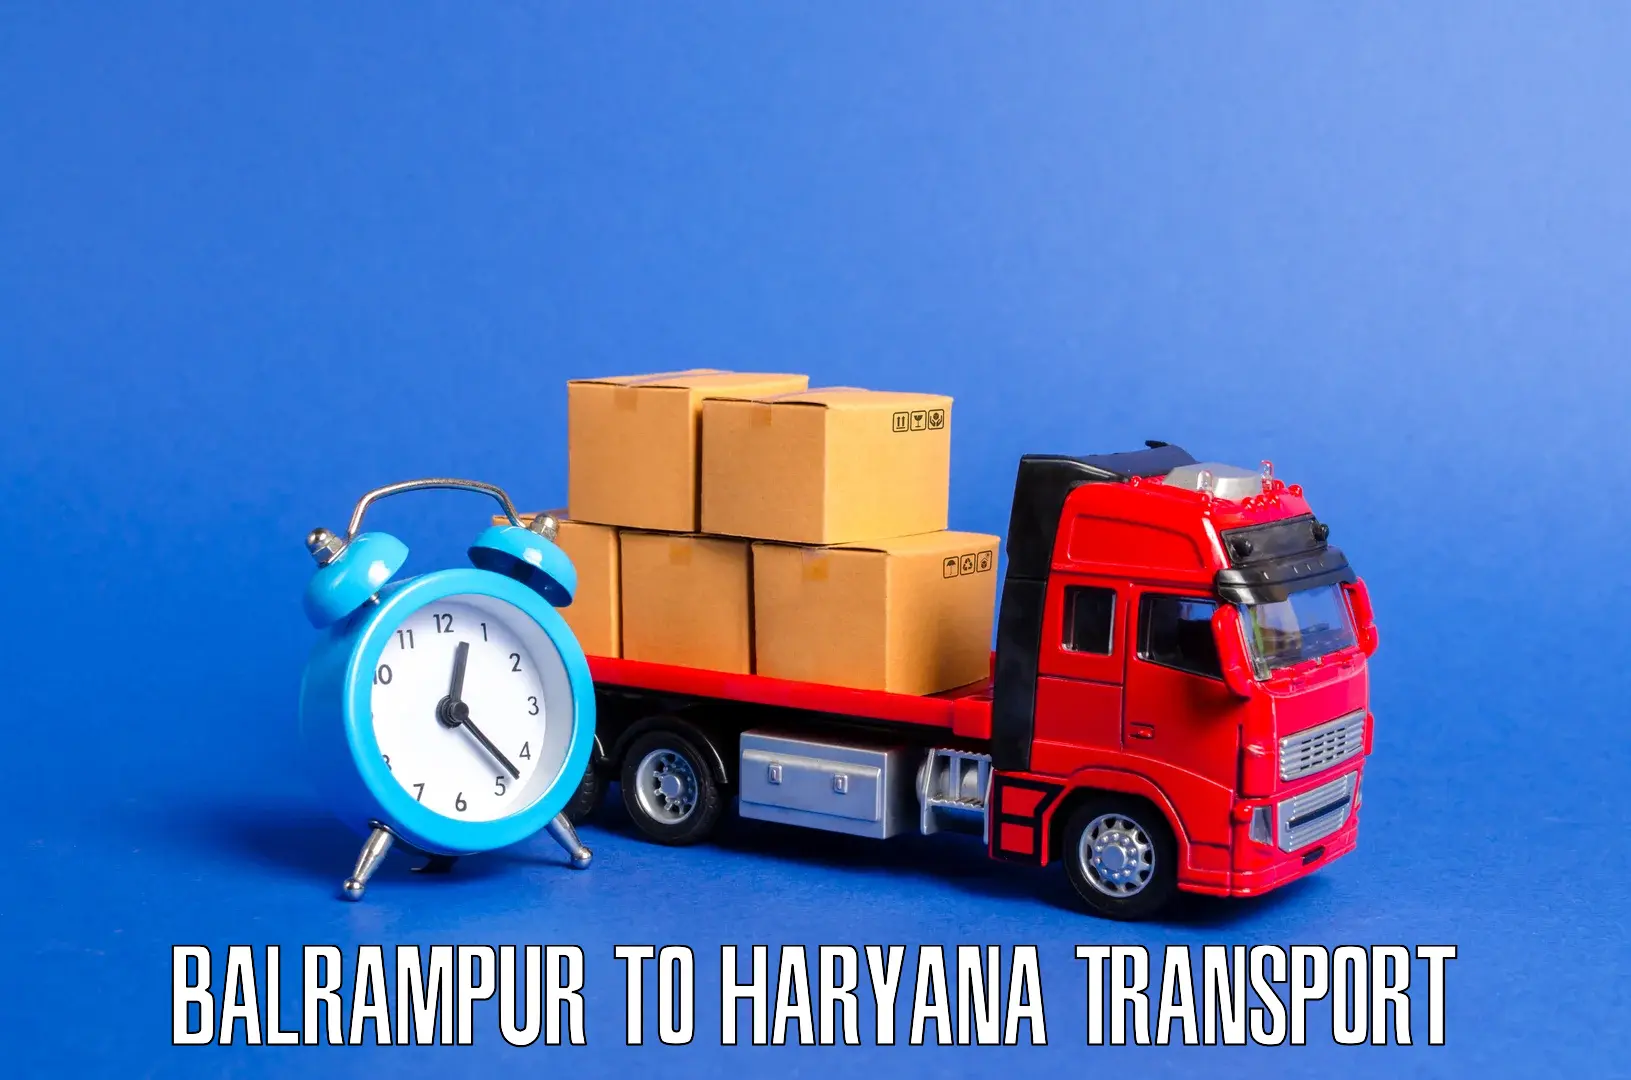 Online transport booking Balrampur to Gurgaon